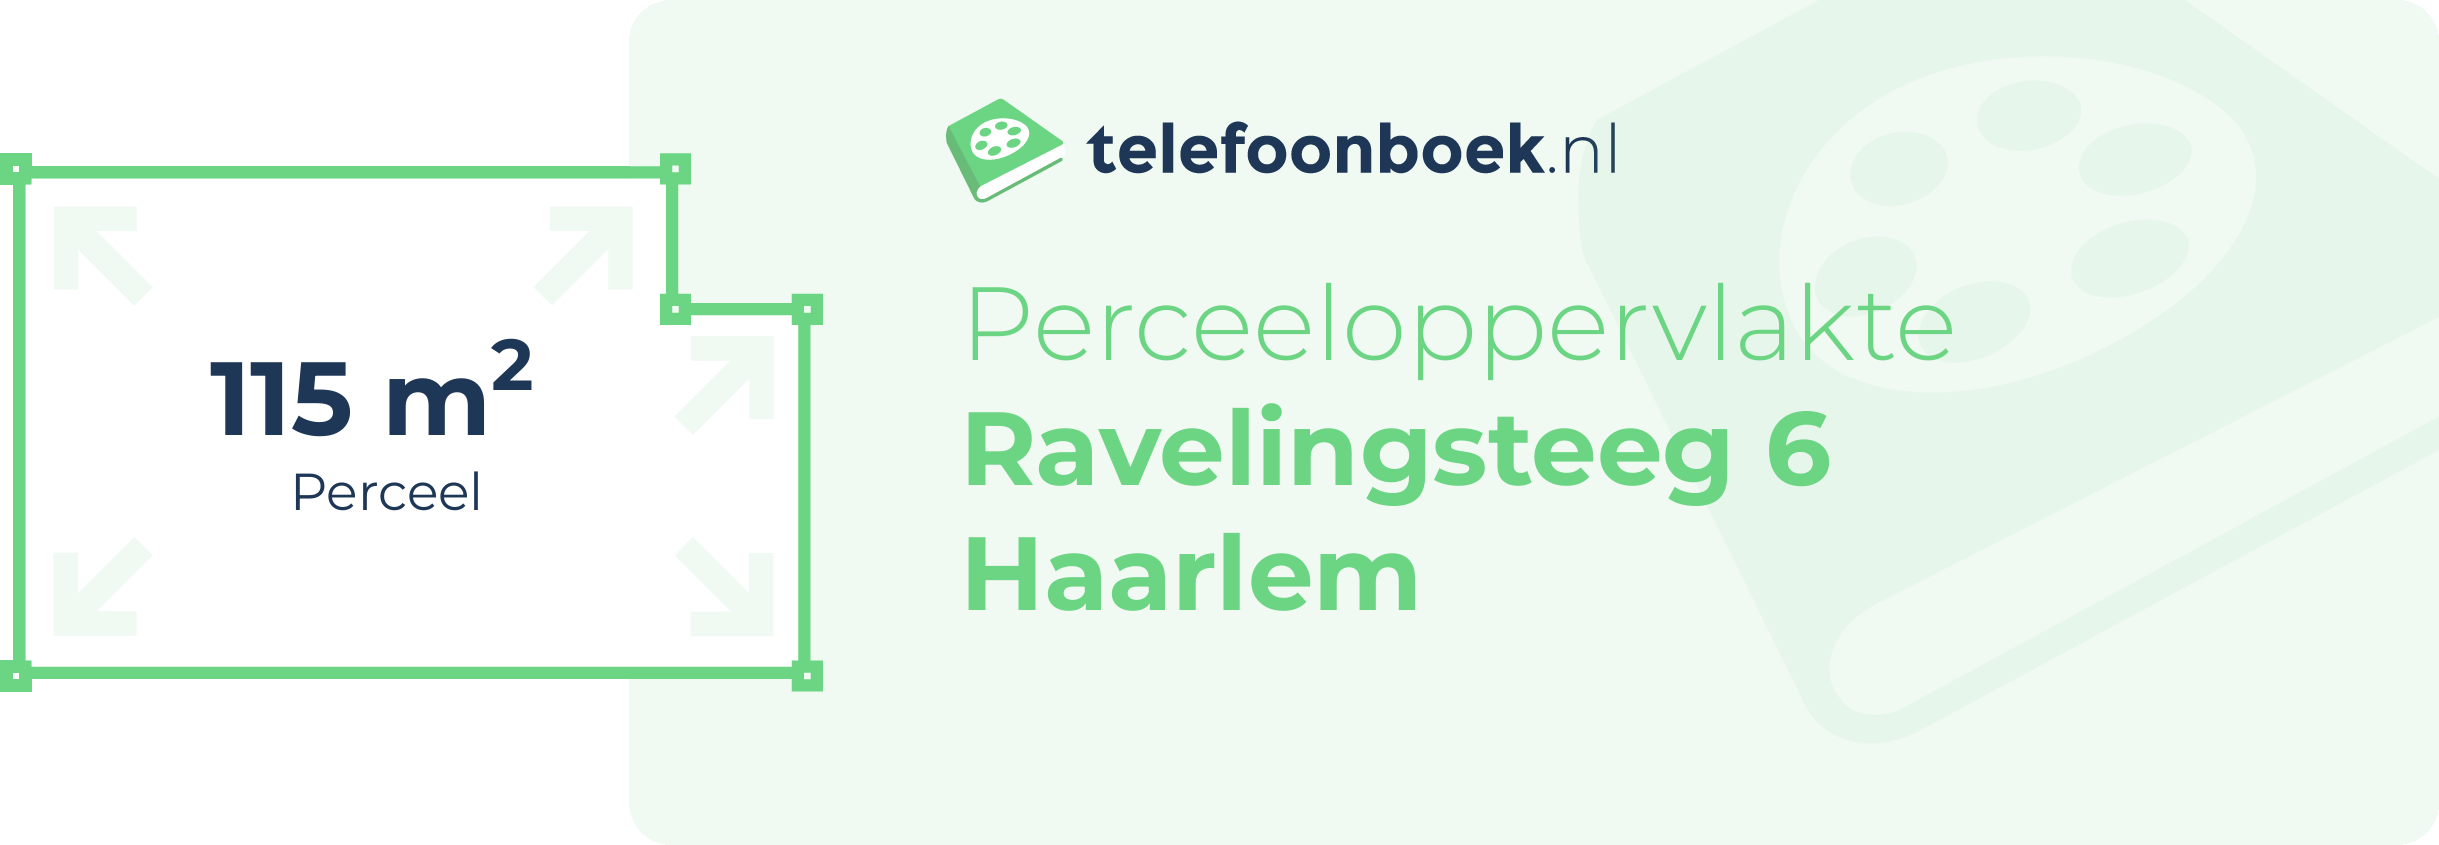 Perceeloppervlakte Ravelingsteeg 6 Haarlem